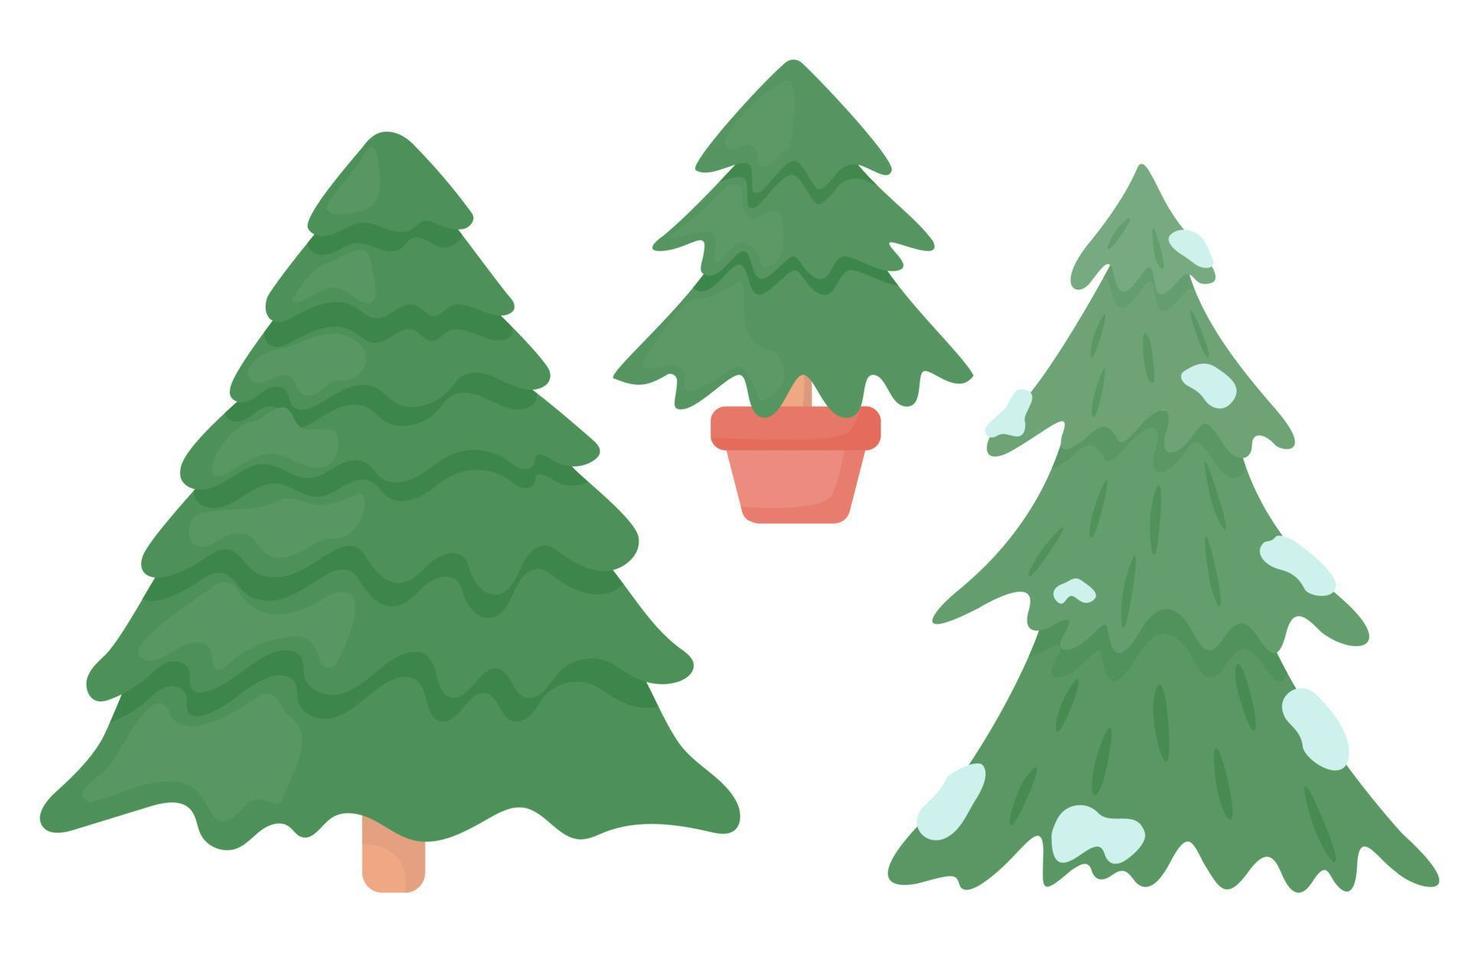 eine Reihe von Weihnachtsbäumen - ein großer Weihnachtsbaum, ein kleiner Weihnachtsbaum in einem Topf, ein Weihnachtsbaum im Schnee. Vektor-Illustration eines flachen Stils. vektor